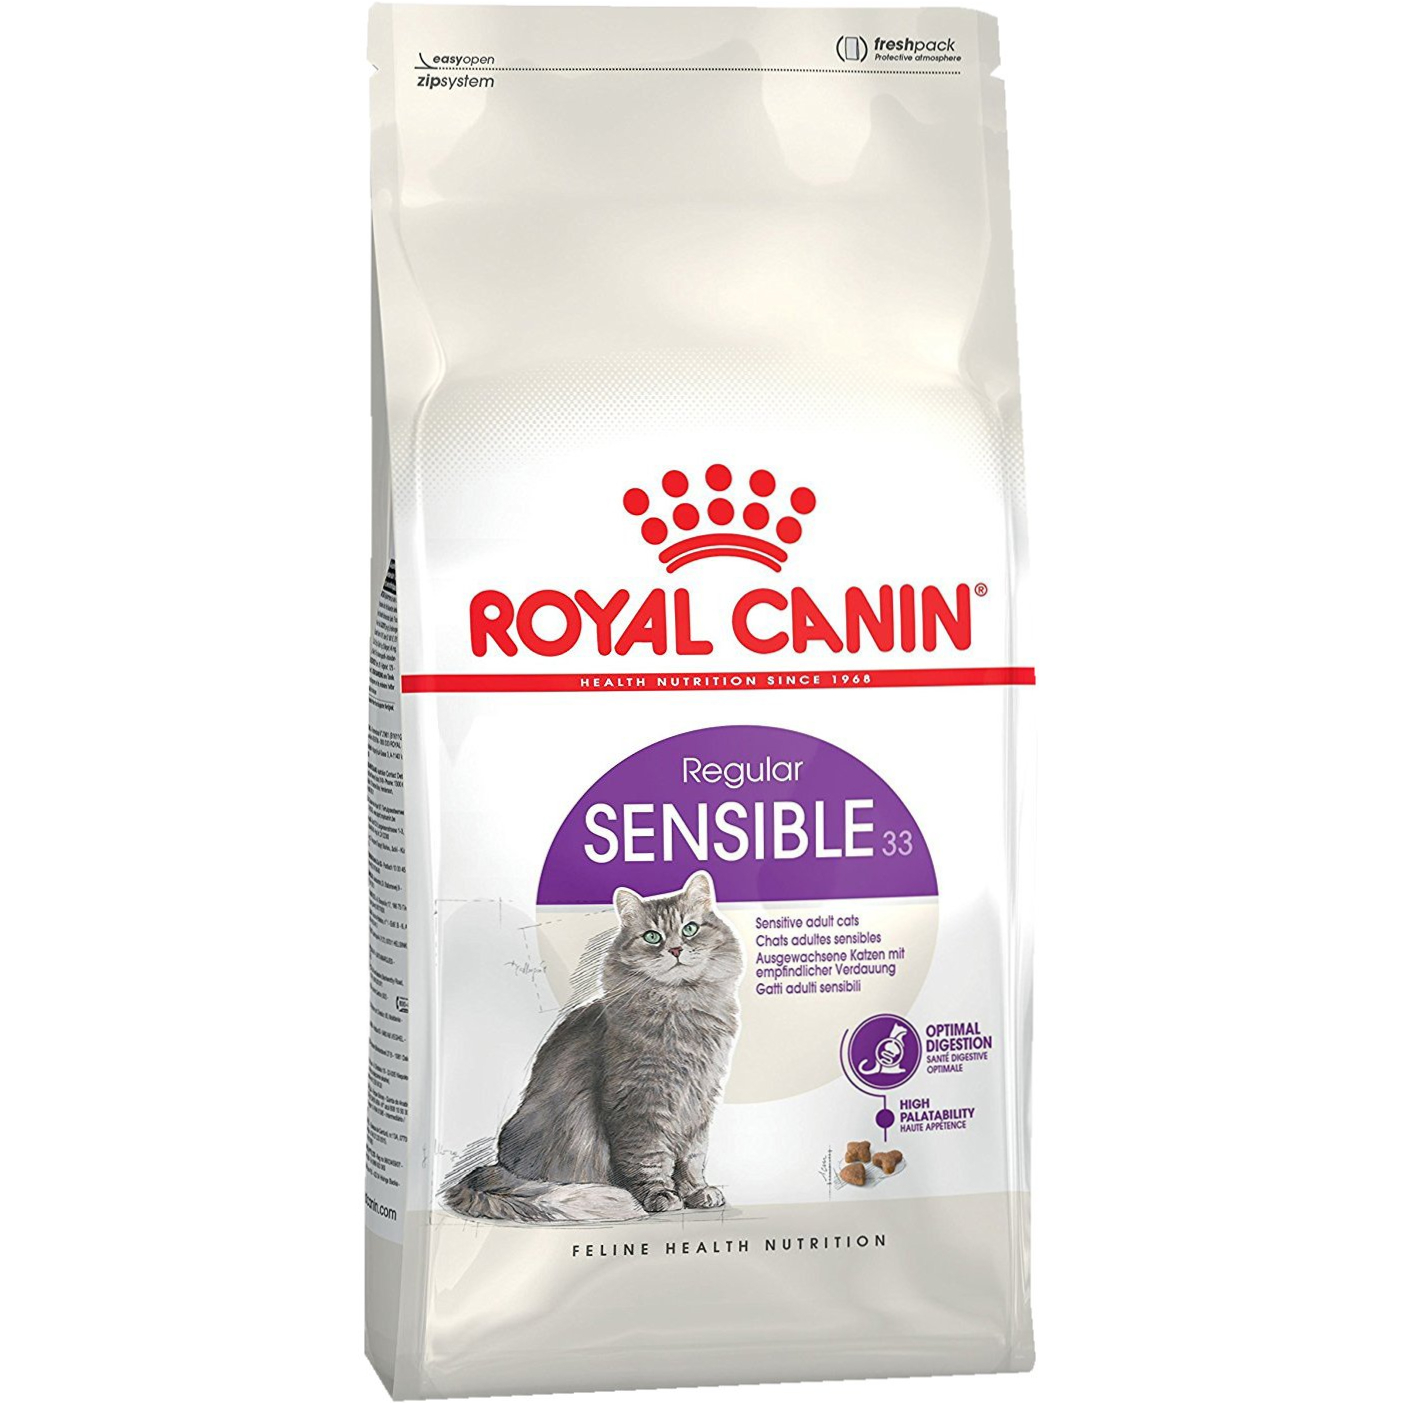 Корм для кошек Royal Canin Sensible 33 с чувствительным пищеварением 1,2 кг royal canin royal canin для бывающих на улице кошек 1 7 лет 560 г